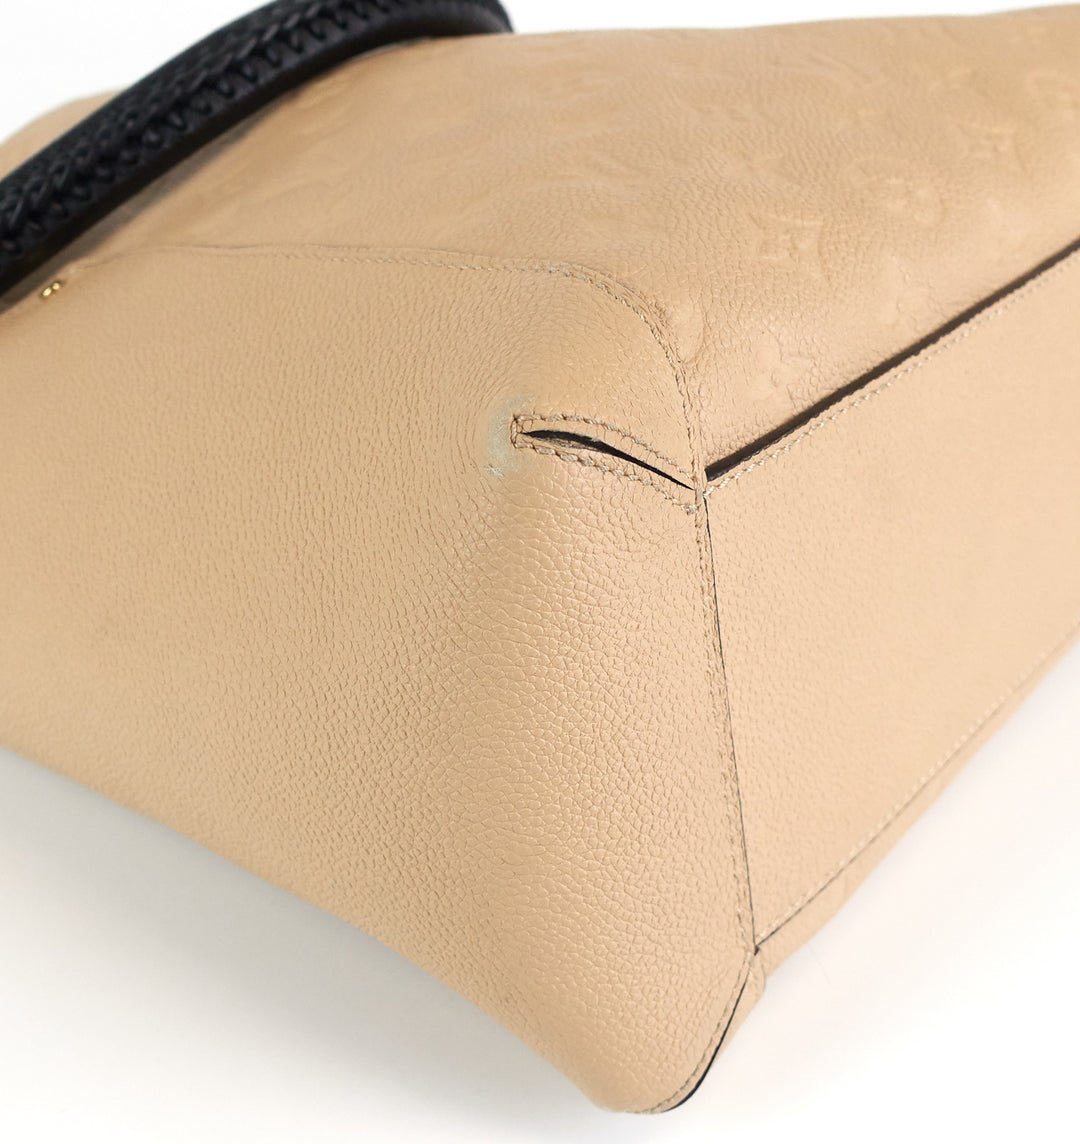 LOUIS VUITTON Bagatelle Monogram Empreinte Leather Shoulder Bag Beige-US